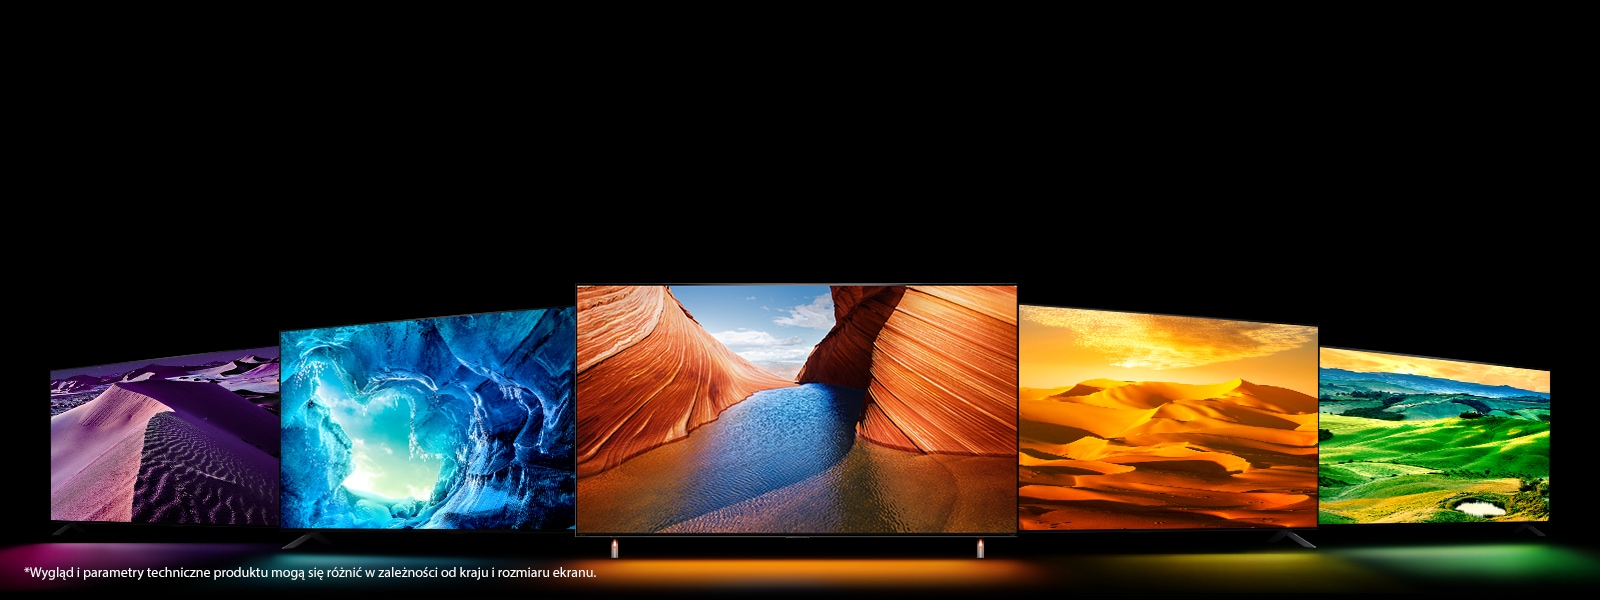 Pięć telewizorów QNED – jeden w środku skierowany do przodu. Po dwa są umieszczone z lewej i z prawej strony. Na ekranie pierwszego telewizora z lewej znajduje się fioletowe zdjęcie pustyni w nocy, na ekranie drugiego z lewej – niebieska lodowa jaskinia, na ekranie środkowego – pomarańczowe klify na przeręblu skierowane ku sobie, na ekranie przedostatniego – jasnożółta pustynia, a na ekranie ostatniego z prawej – ogromna łąka.